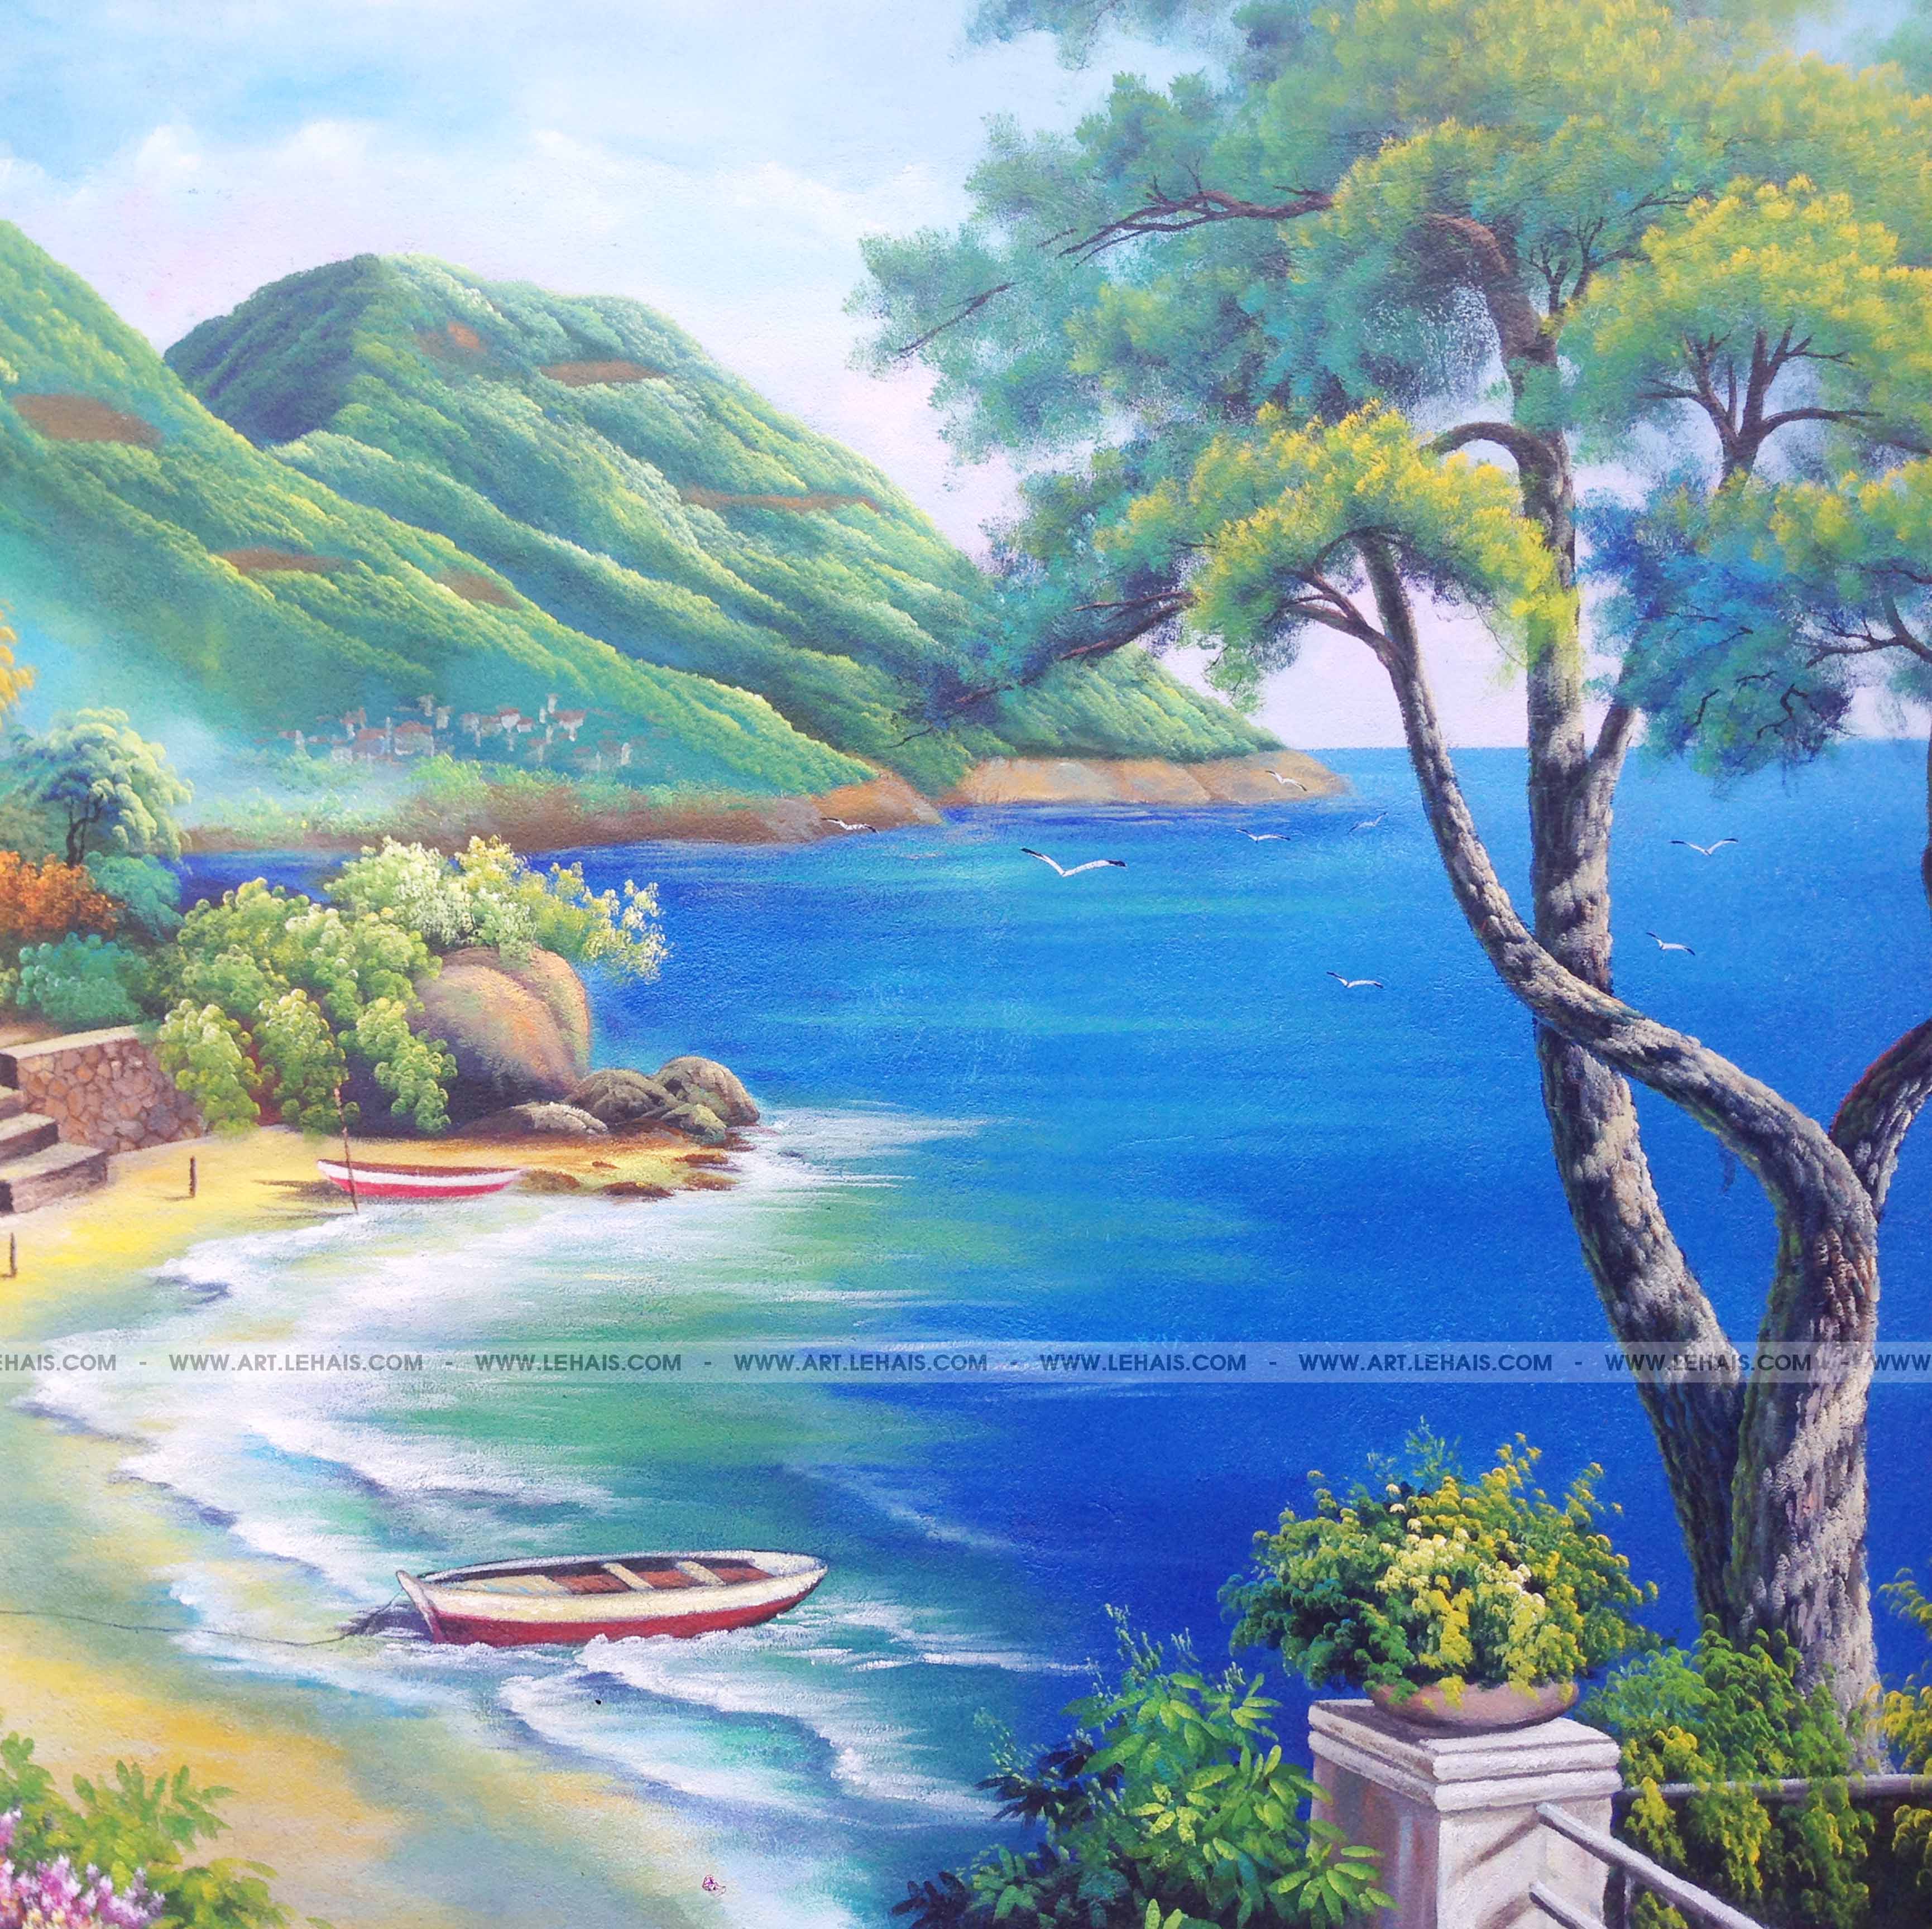 Tranh sơn dầu phong cảnh biển nổi tiếng của Thomas TSD 427